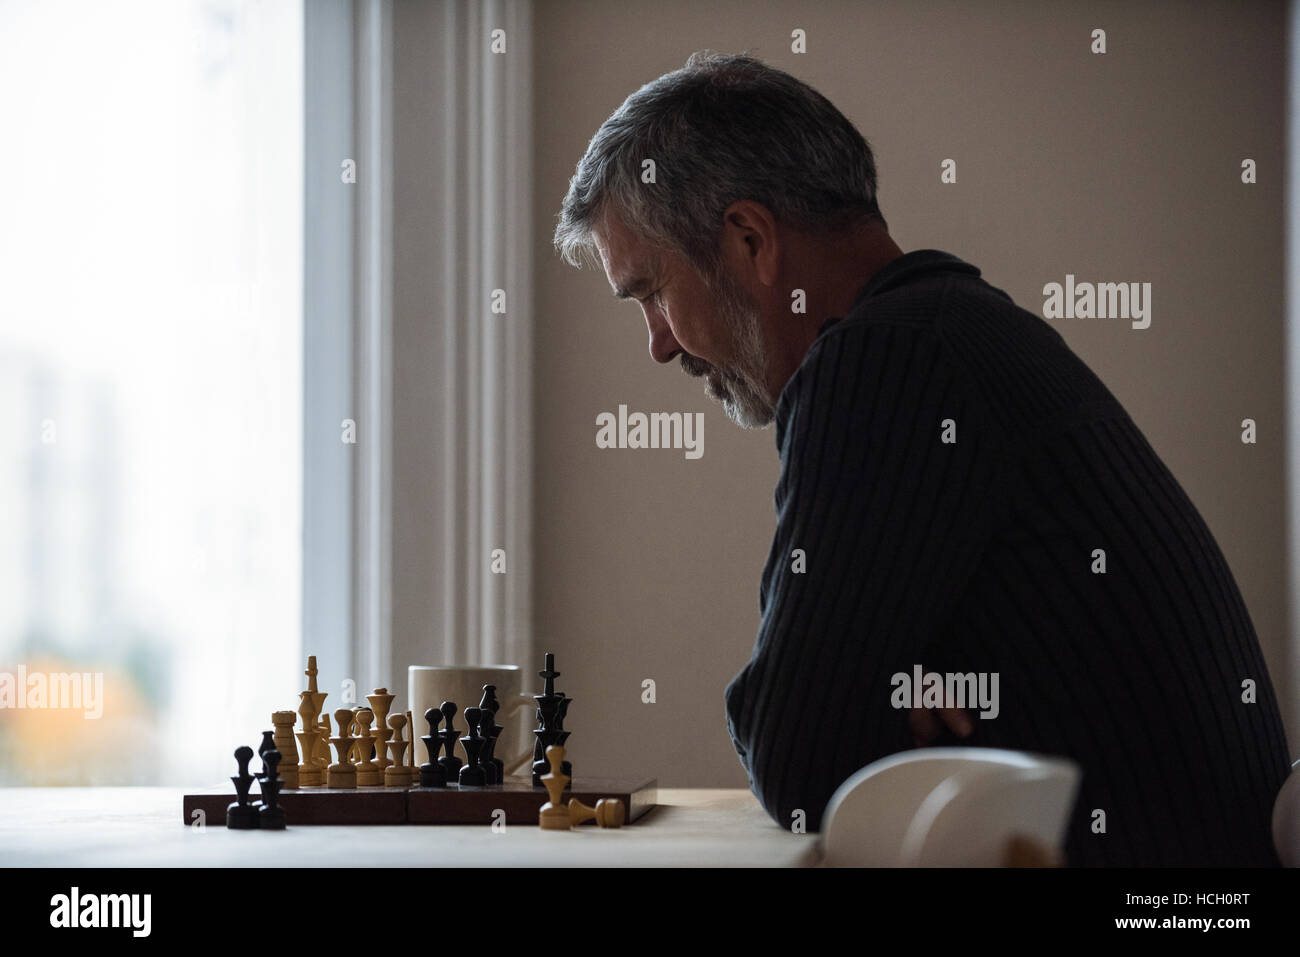 Atentos al hombre jugando ajedrez Foto de stock